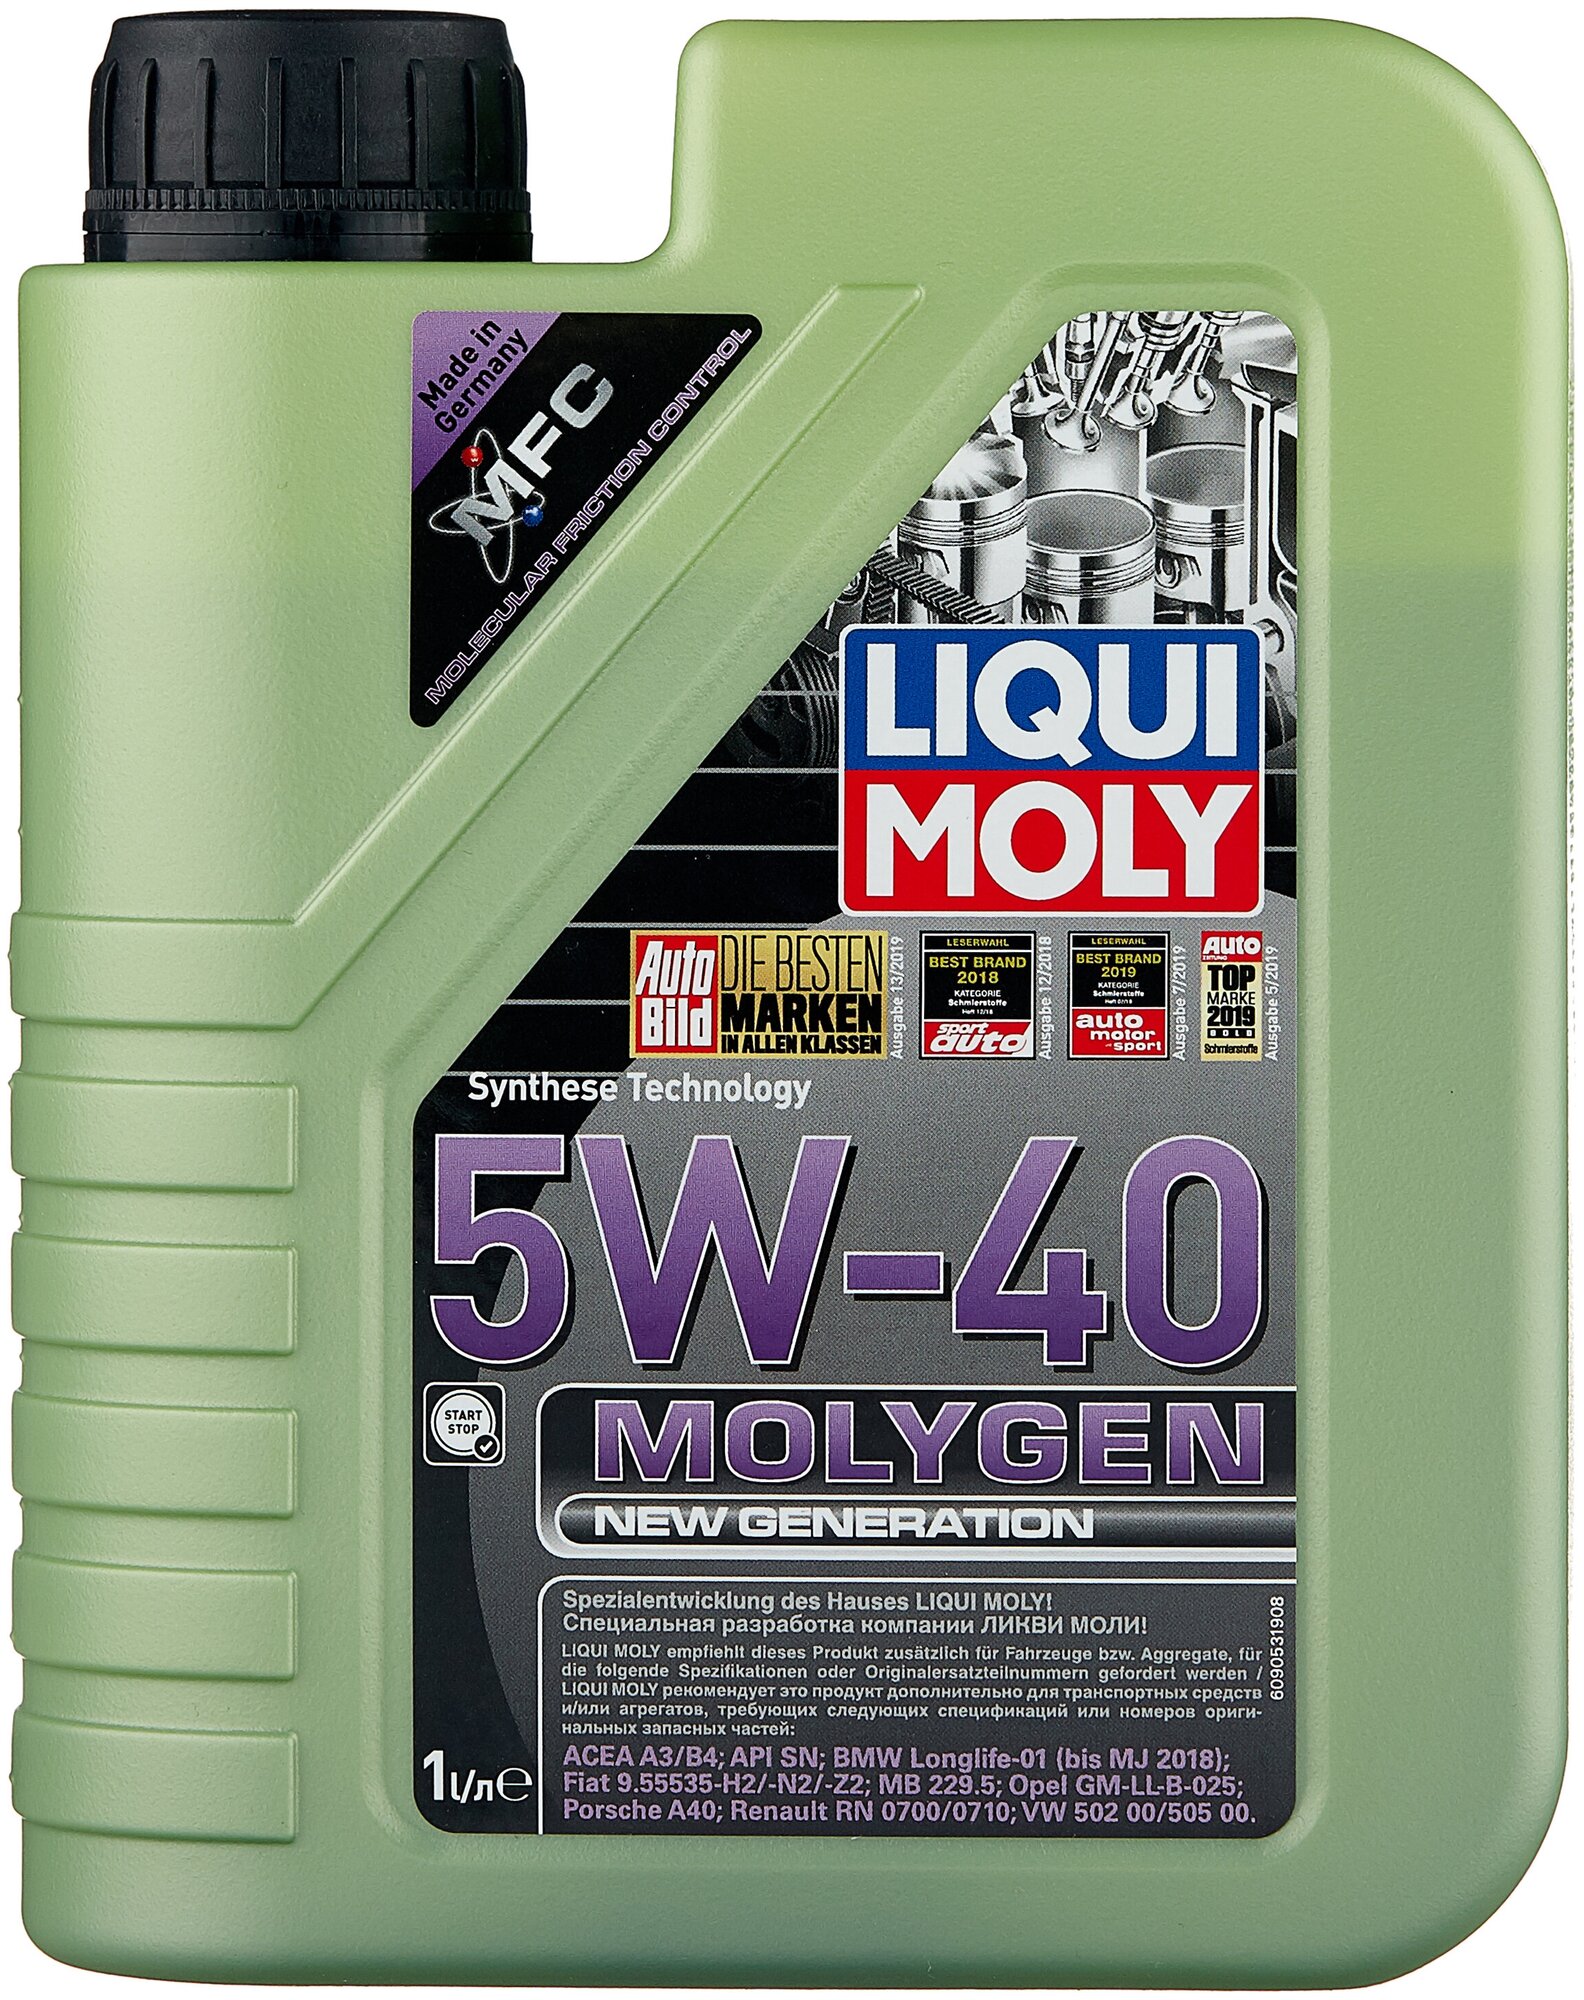    LIQUI MOLY Molygen New Generation 5W-40, 1 